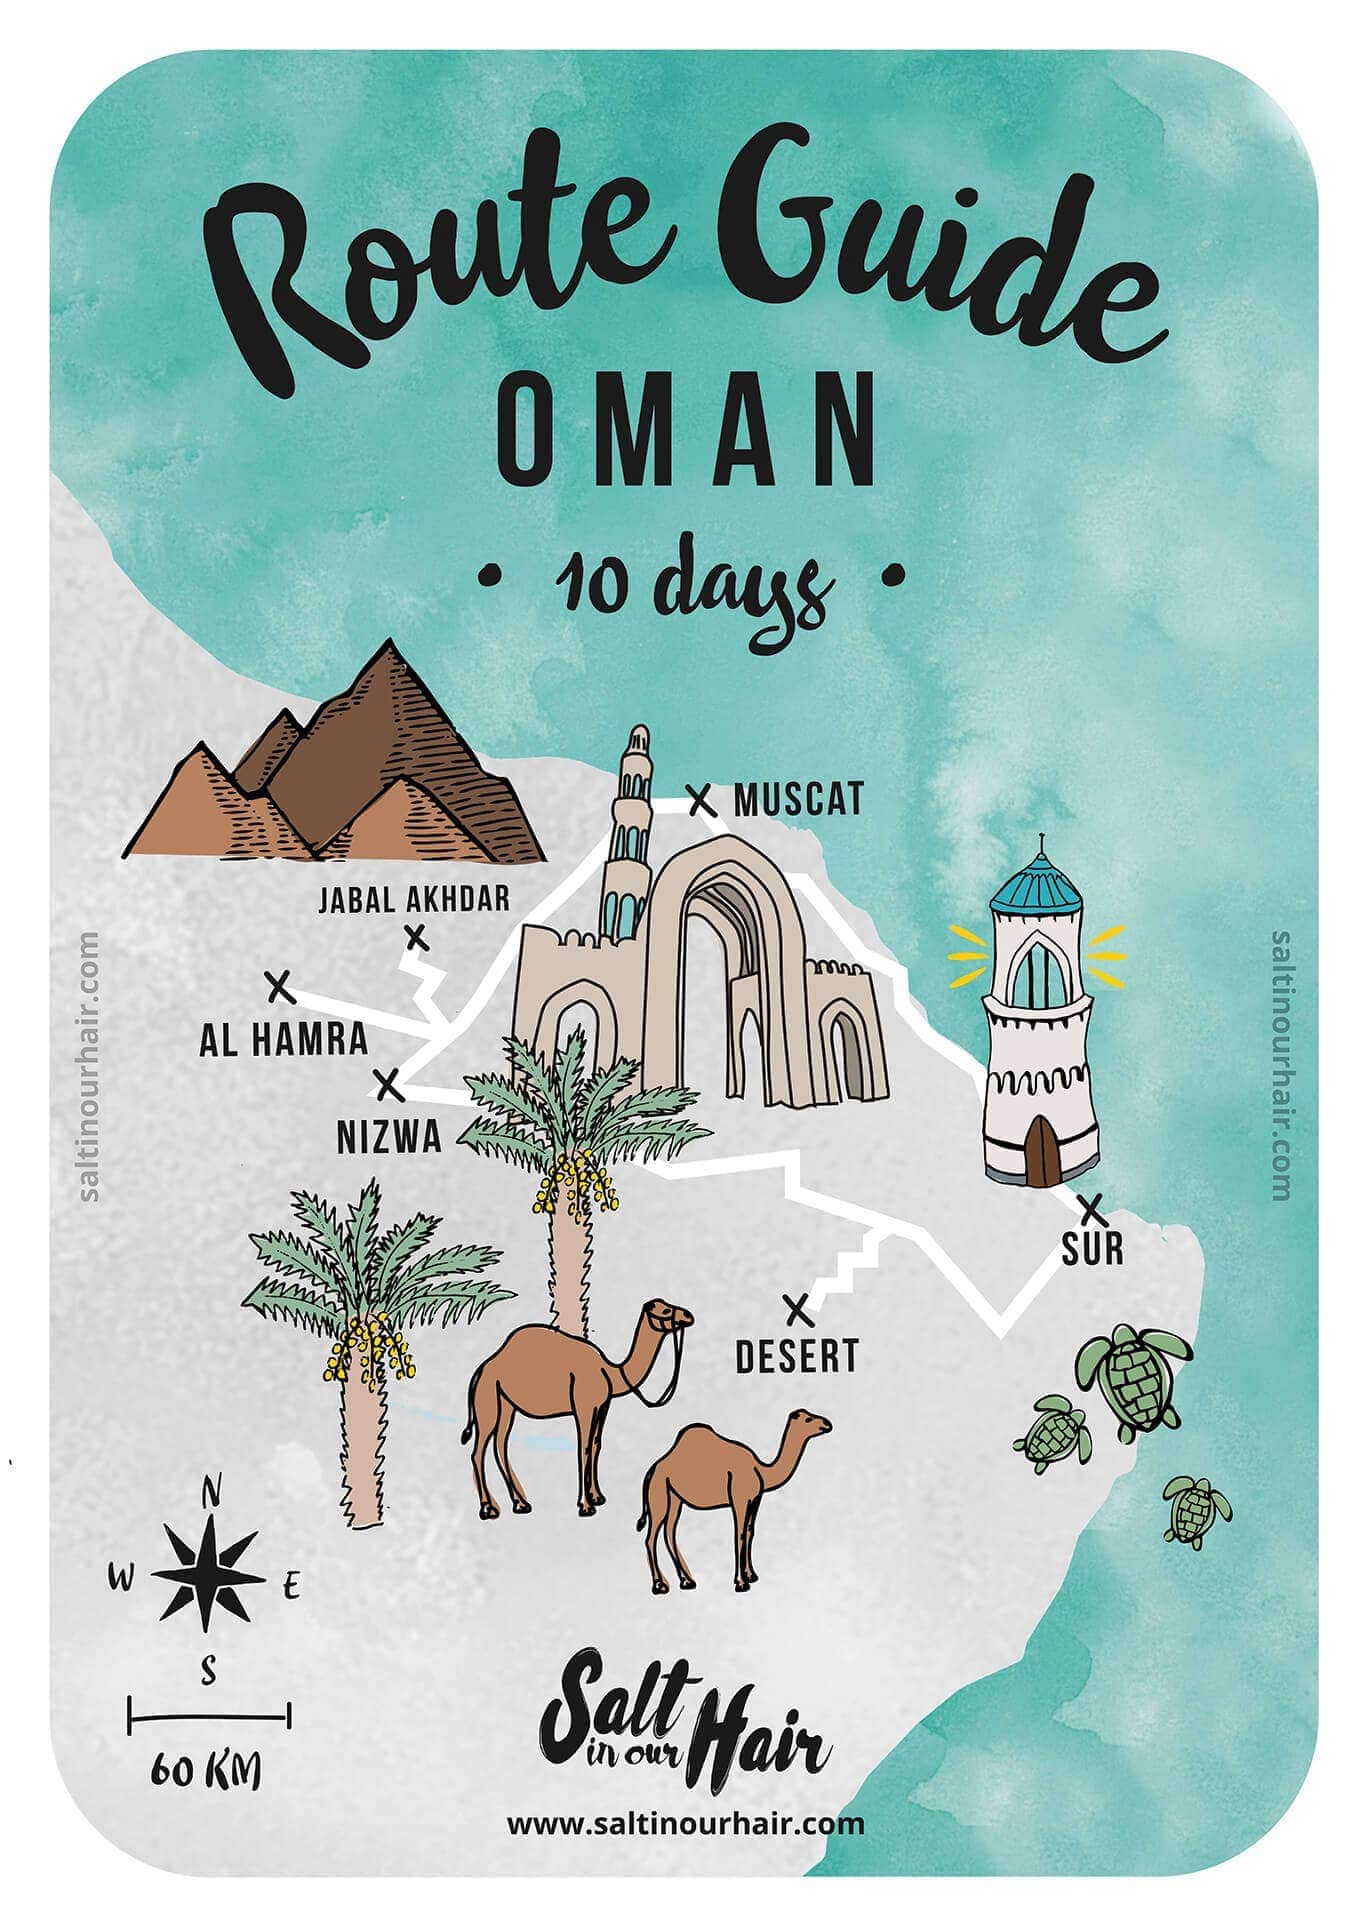 Oman routekaart 10 dagen